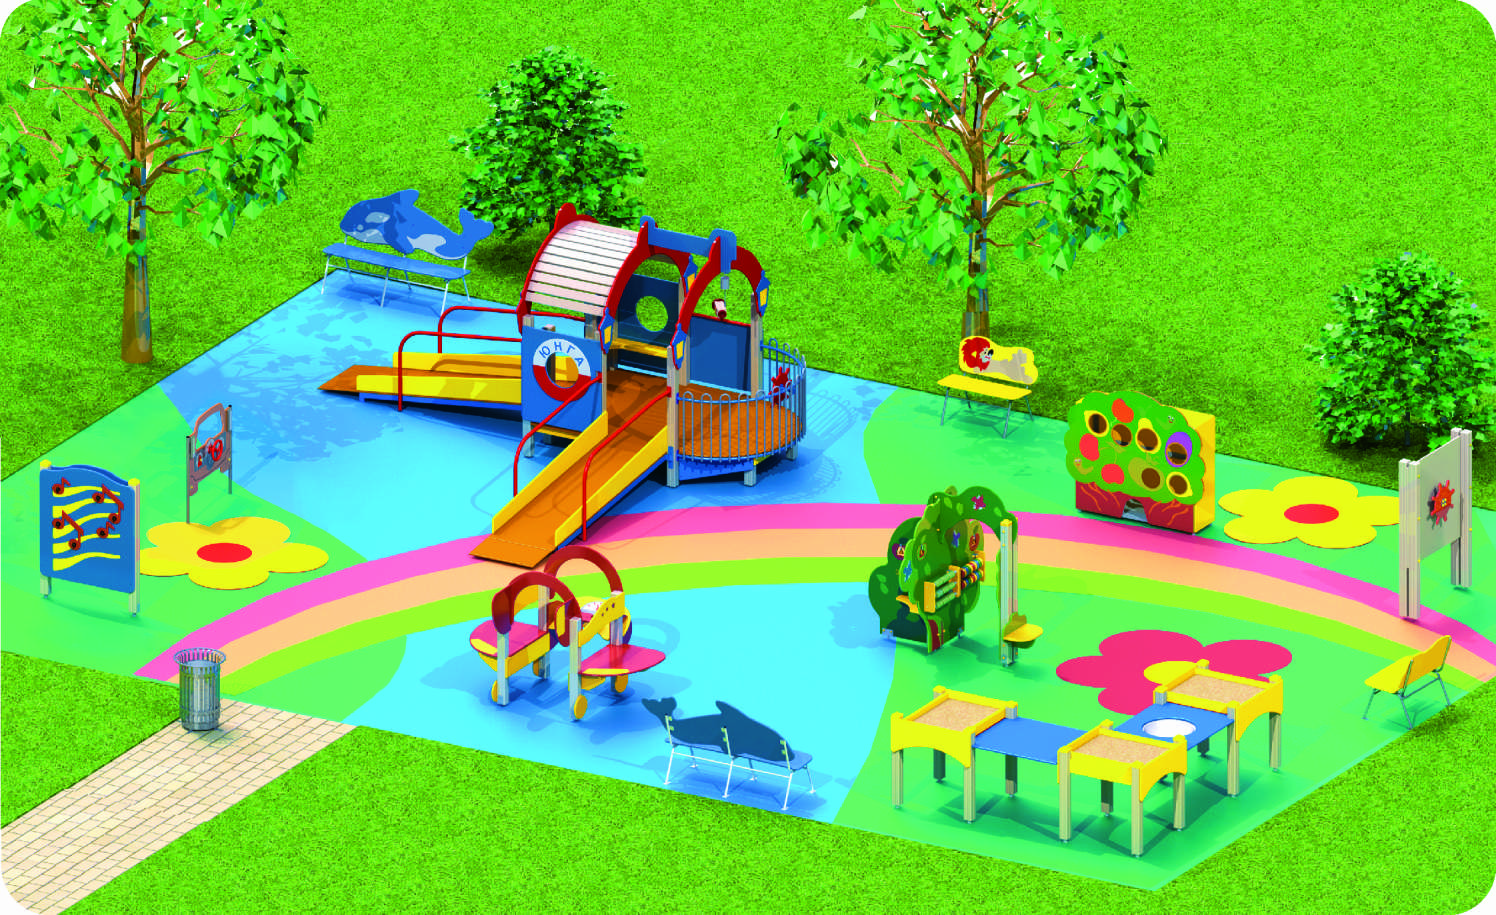 3д дизайн детской площадки